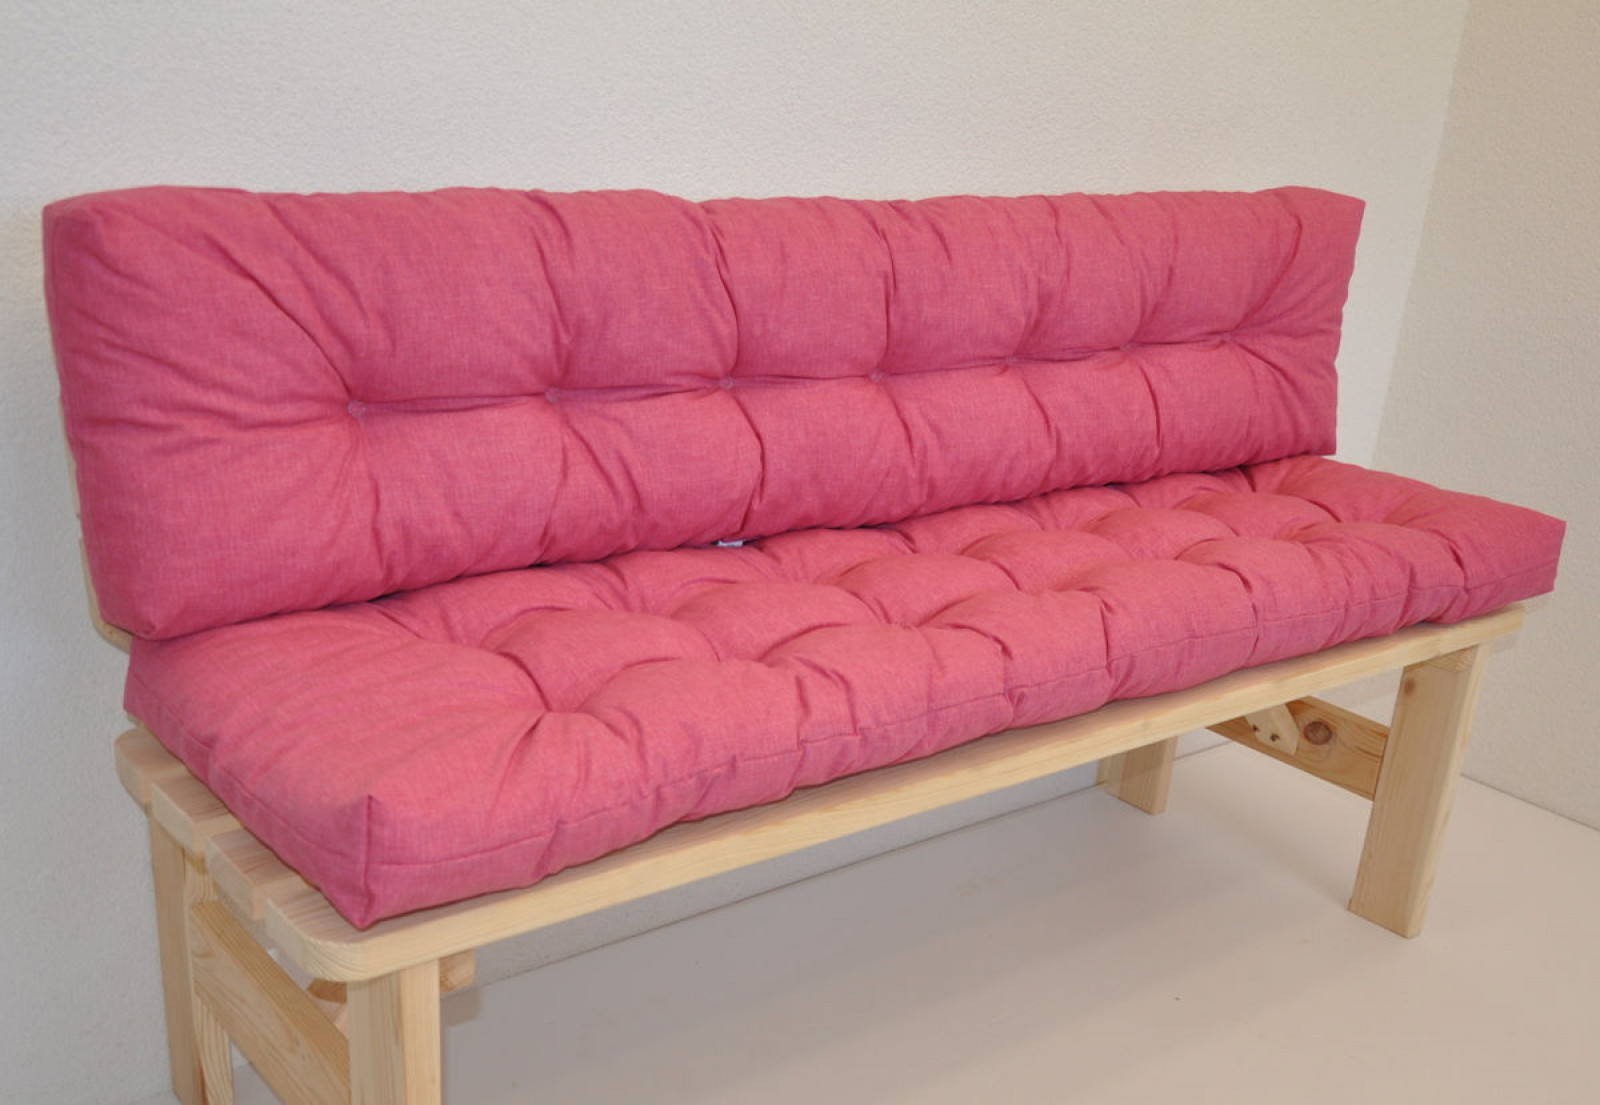 Premium Kissen / Polster für Gartenbank / Bankkissen 150 cm Color rosa antico (alt rosa)